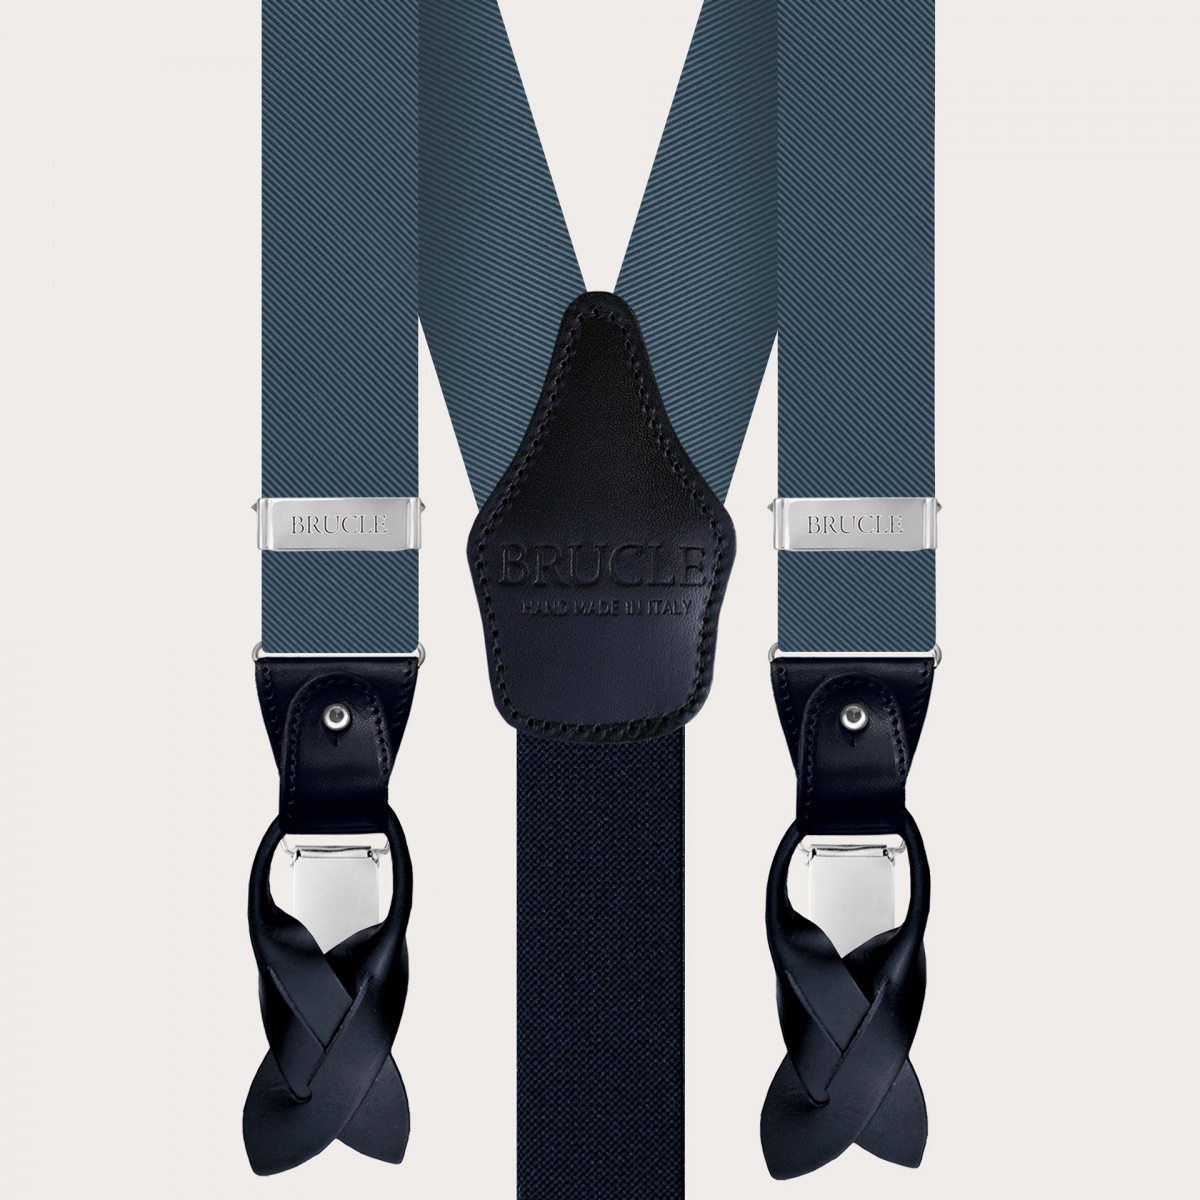 BRUCLE Elegant men's suspenders in teal-colored silk